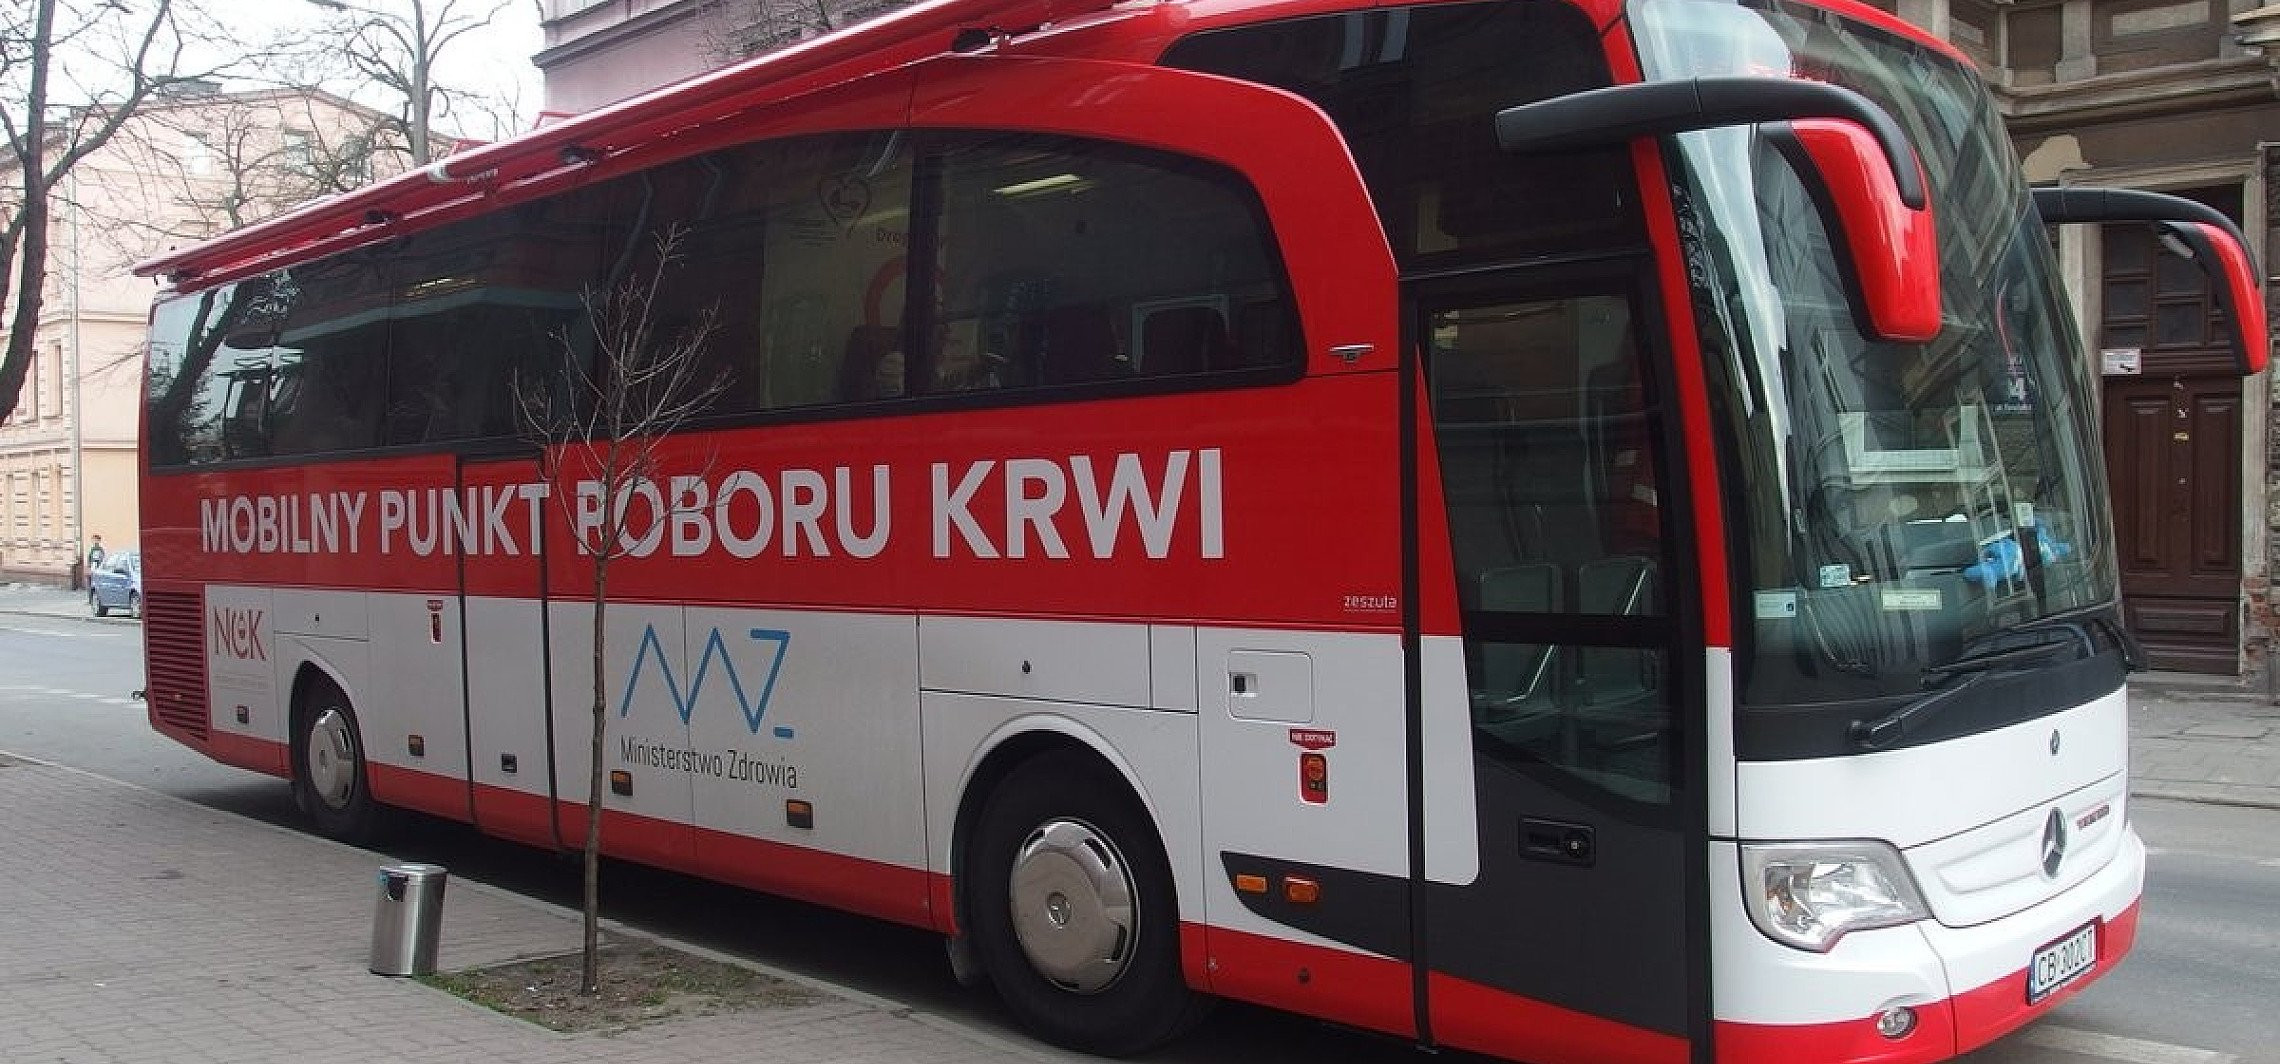 Inowrocław - Jutro będą zbierać krew dla potrzebujących